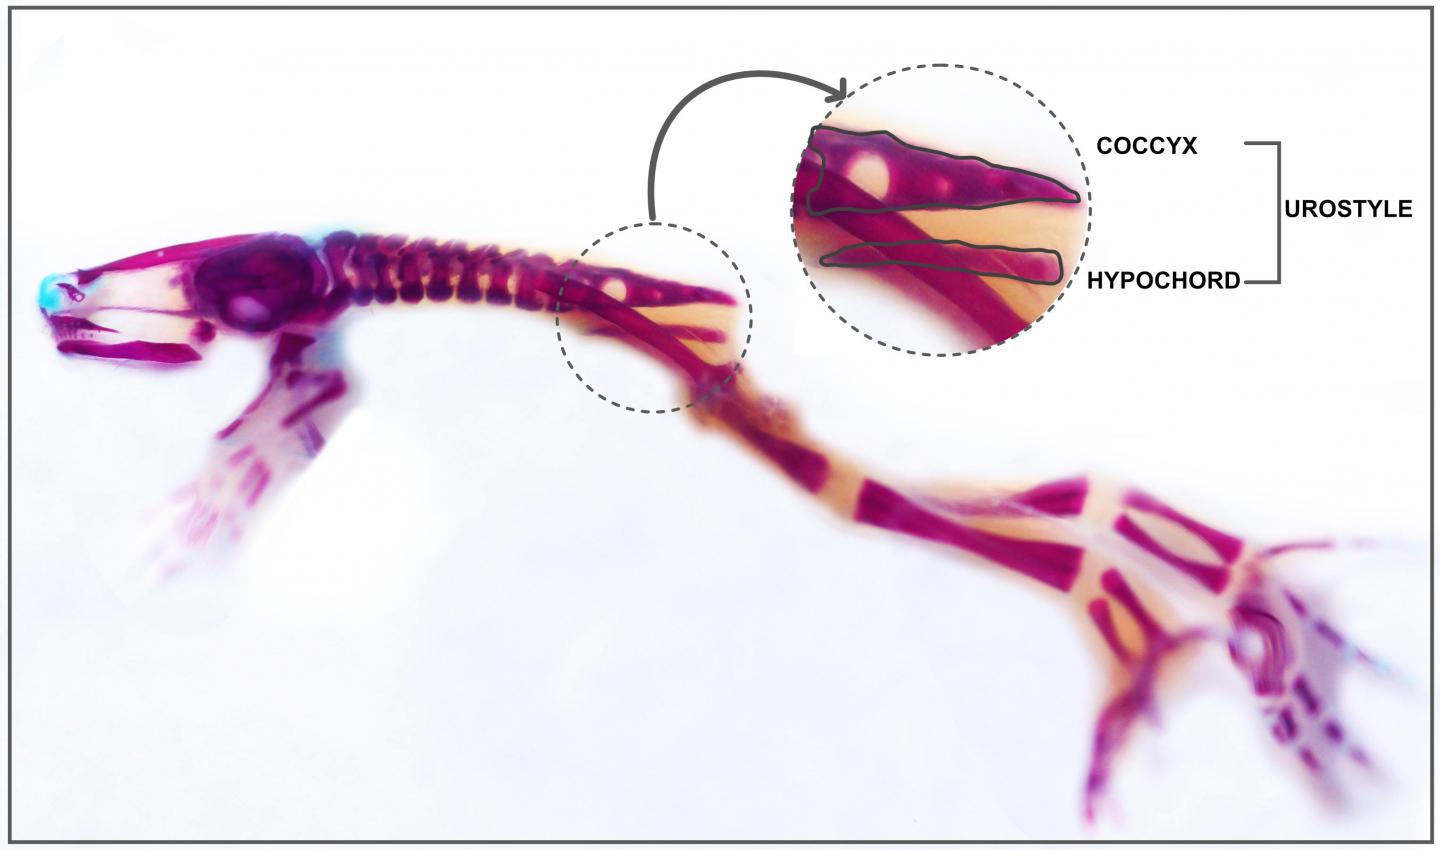 变化中的蝌蚪的侧面 (stage 64 热带爪蟾)显示了发育中的尾杆骨